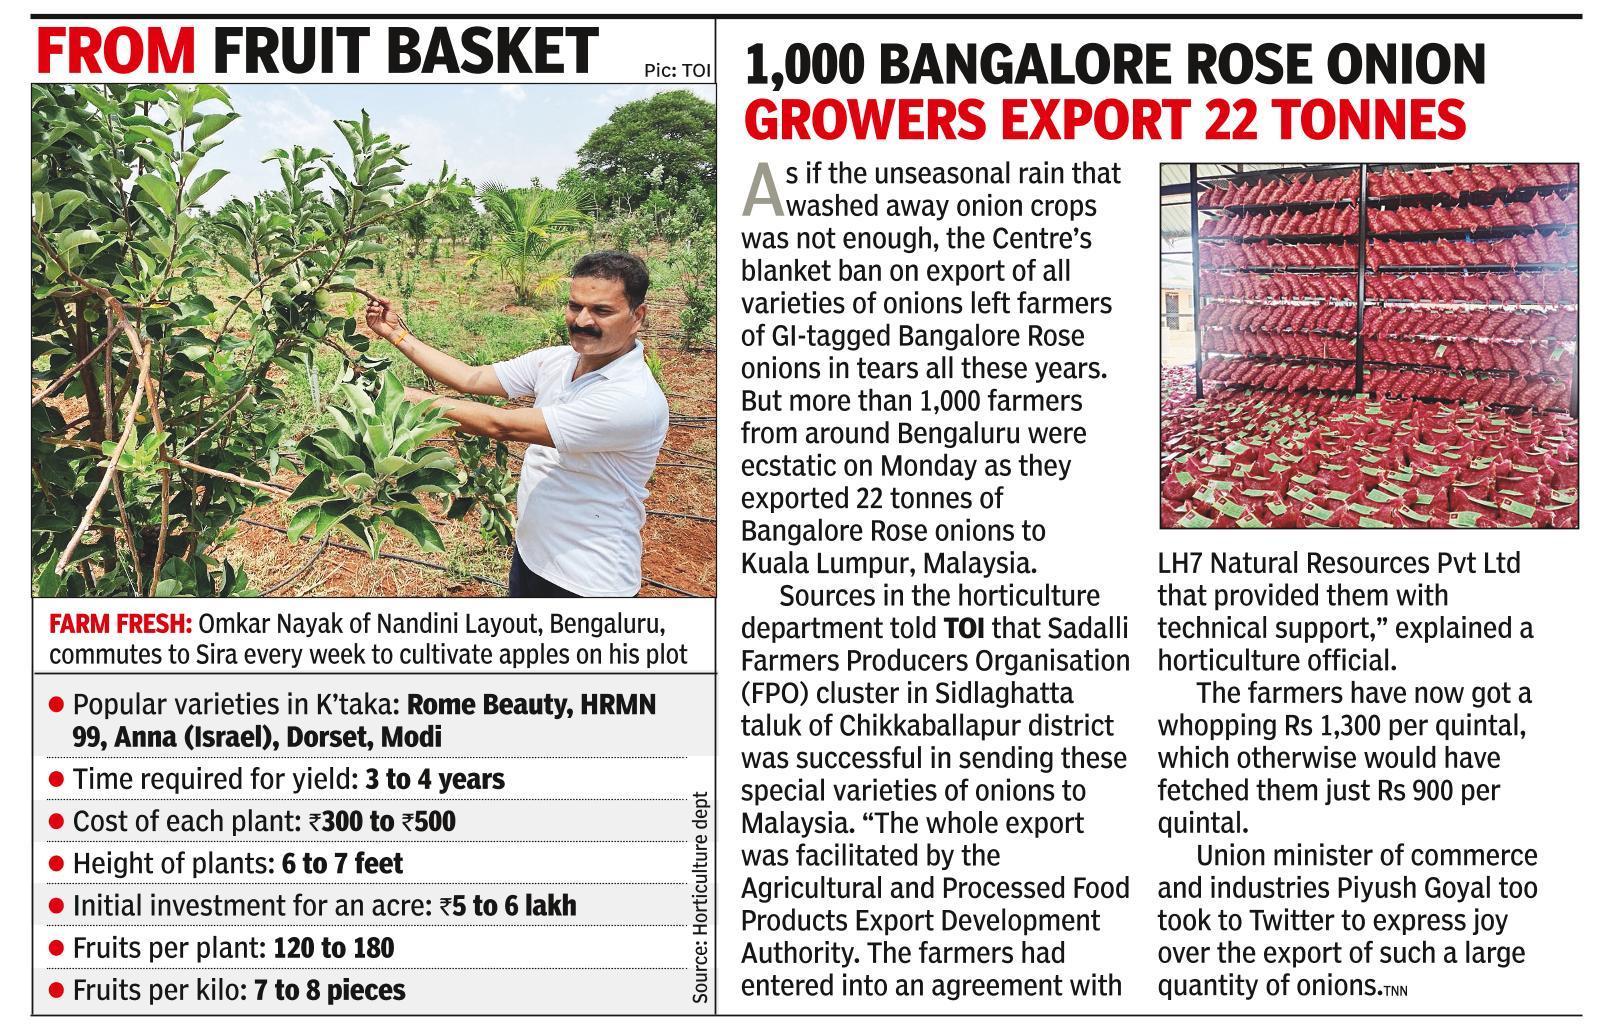 Find juicy apples growing in Bengaluru’s neighbourhood